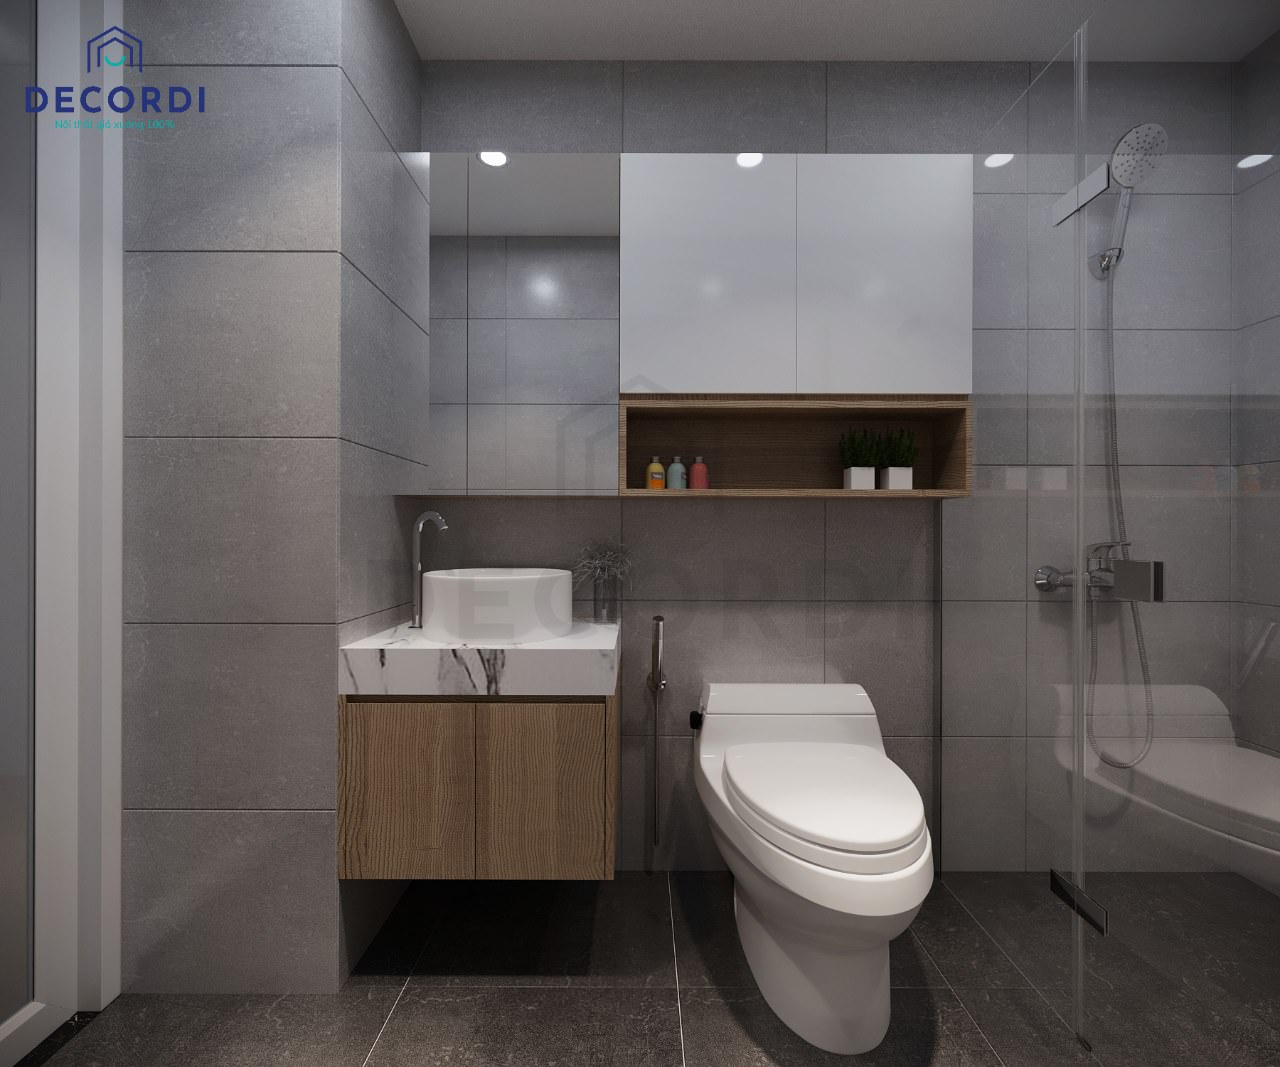 Thiết kế nhà vệ sinh hiện đại với tông màu xám đen sang trọng kết hợp tủ lavabo gỗ đẹp mắt